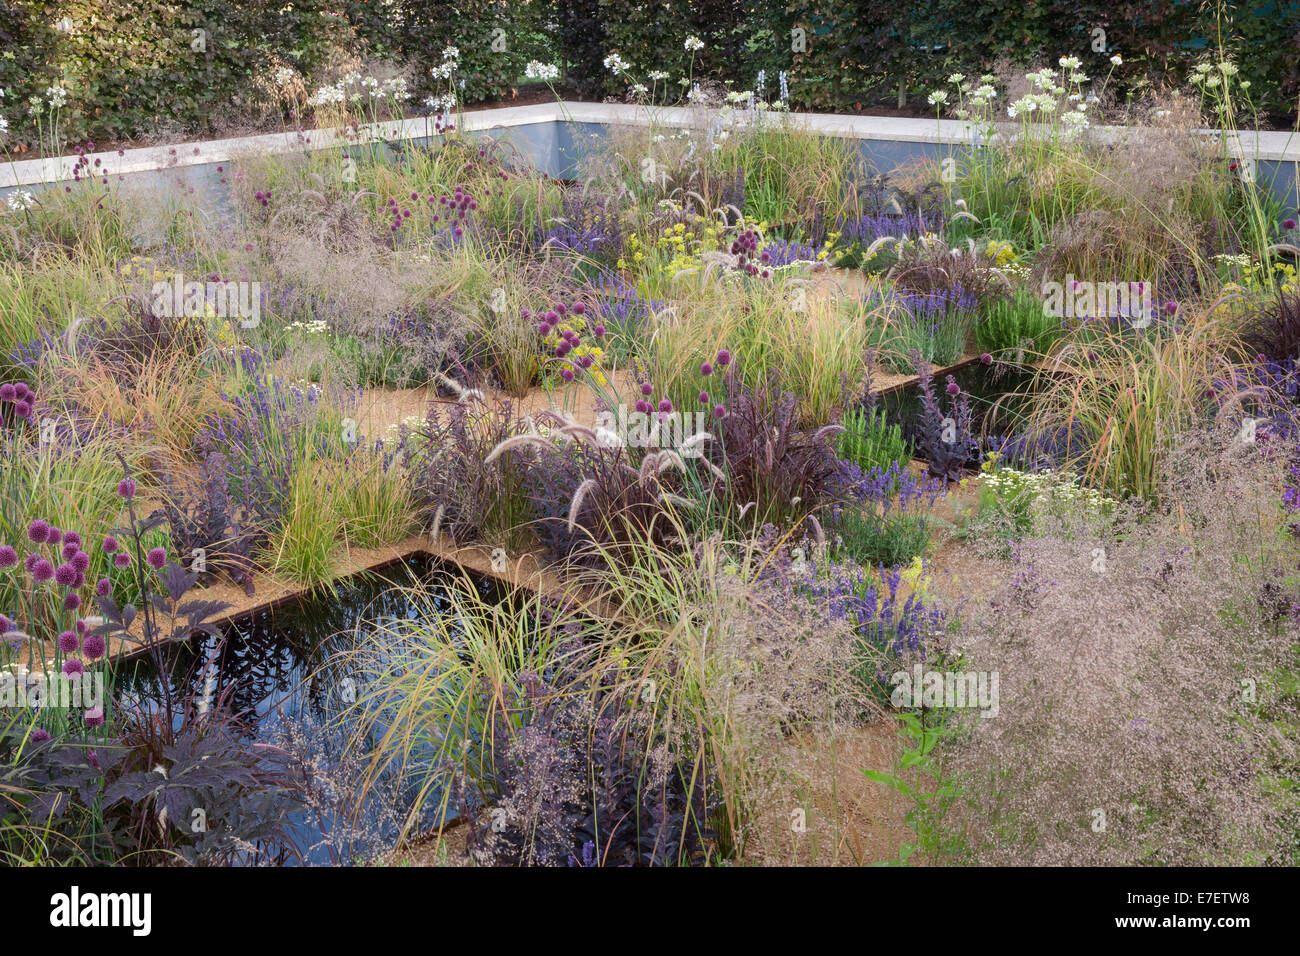 Englisch modernen Kiesgarten mit Wasser Funktion Pool Pflanzung von Ziergras Gräser Alliums Pflanzen wachsen Blumenbeete Garten Grenze Sommer UK Stockfoto